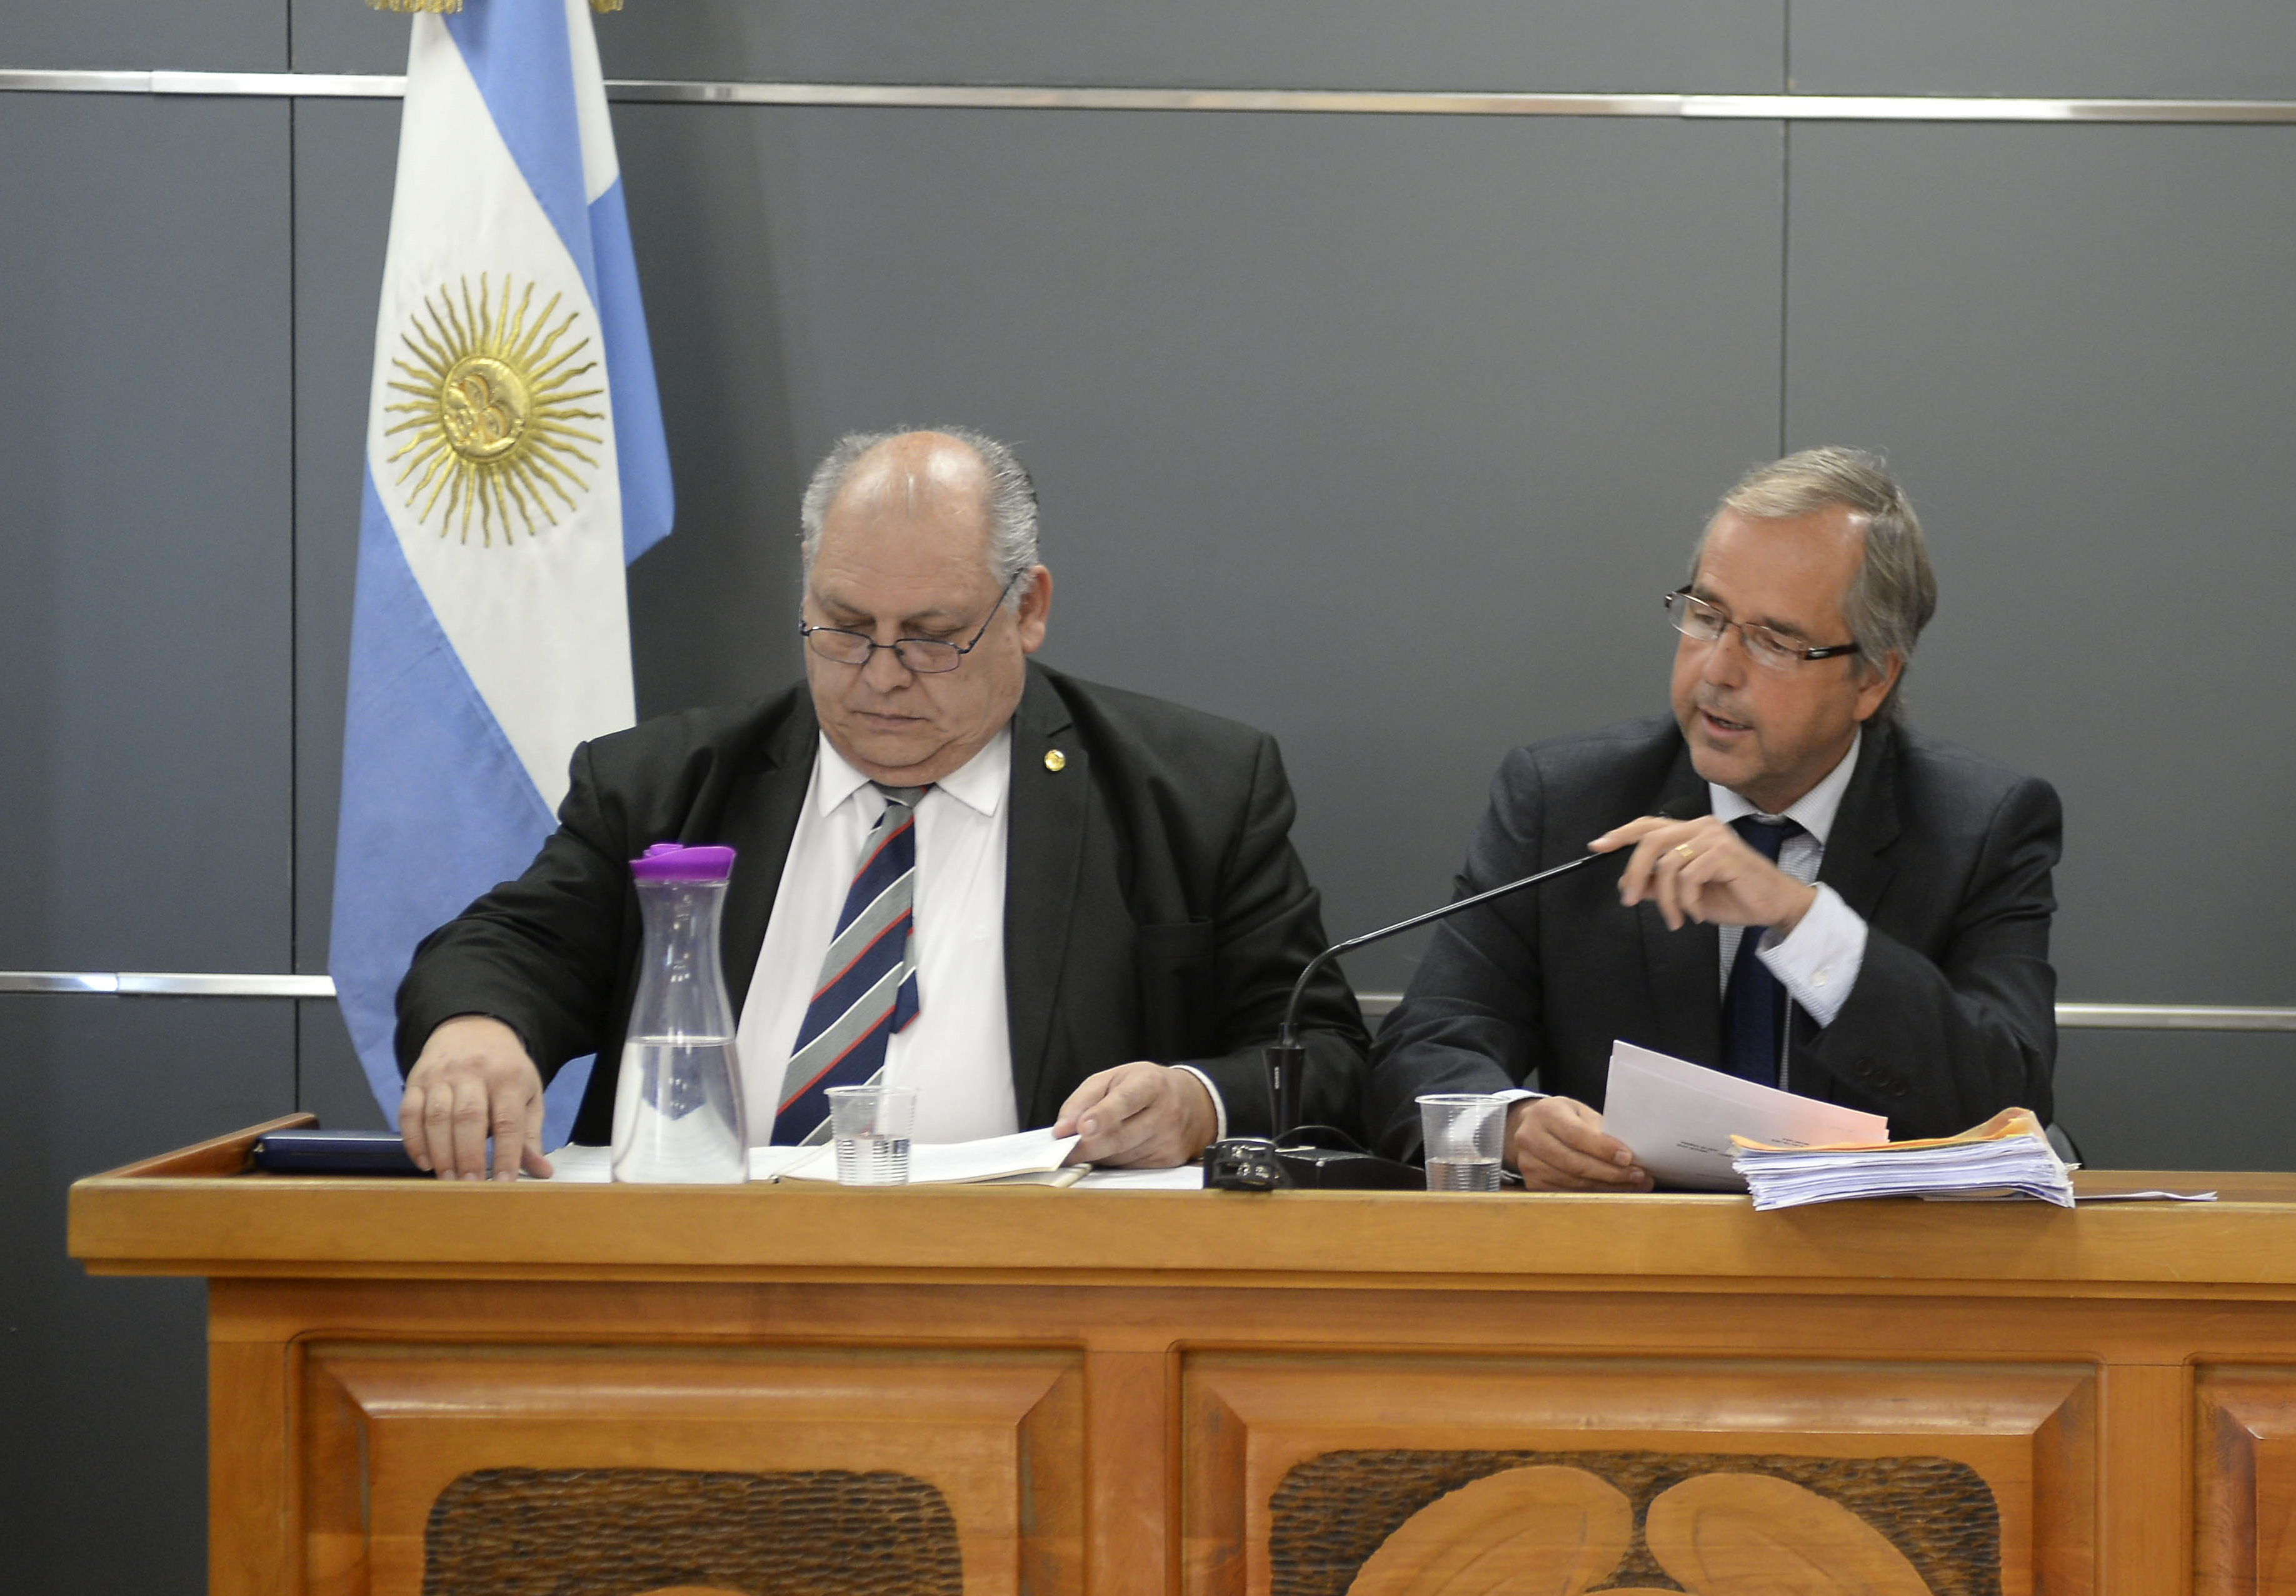 El juez Gregor Joos (a la derecha) votó por declarar culpable al imputado, junto con el magistrado Juan Martín Arroyo, pero su colega Héctor Leguizamón Pondal (a la izquierda) no coincidió con la mayoría. (foto archivo)